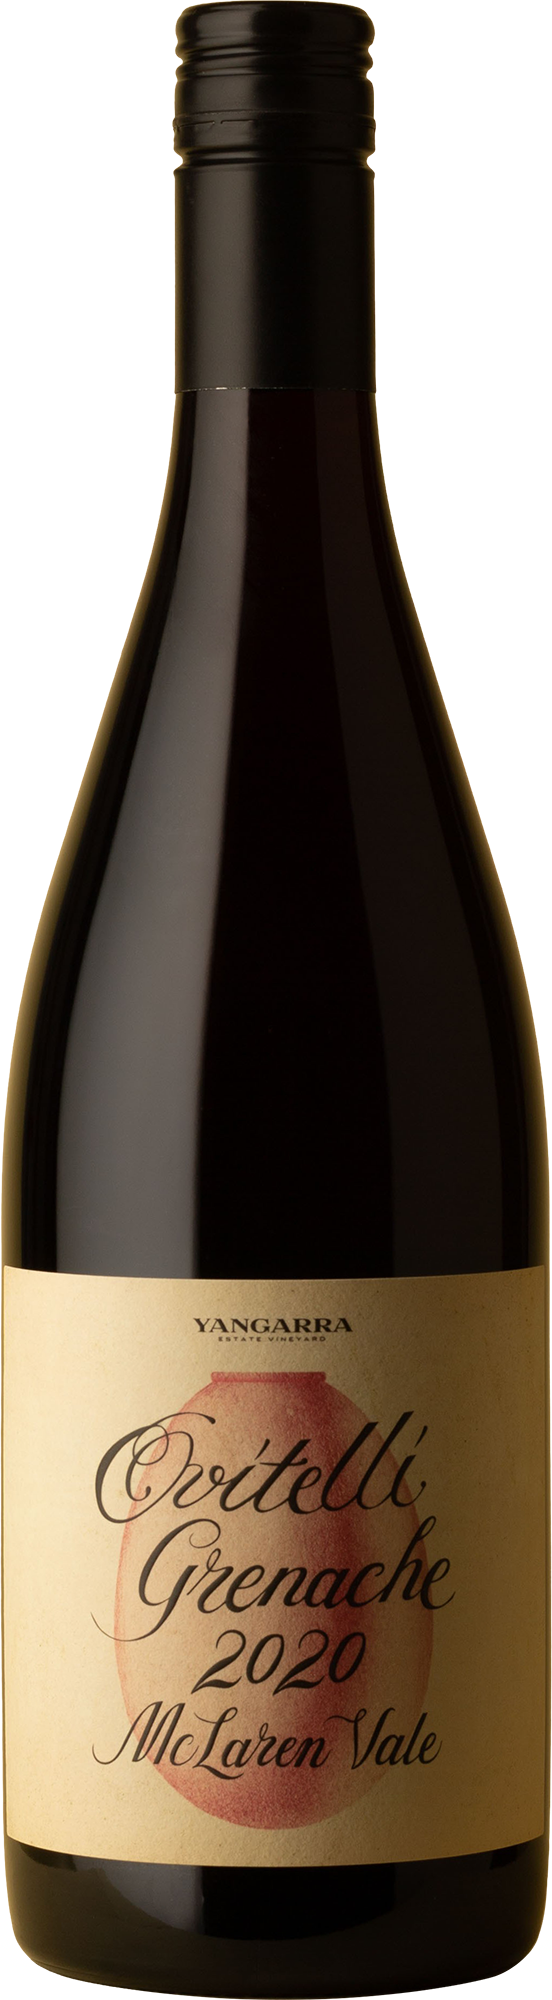 Yangarra - Ovitelli Grenache 2020 Red Wine